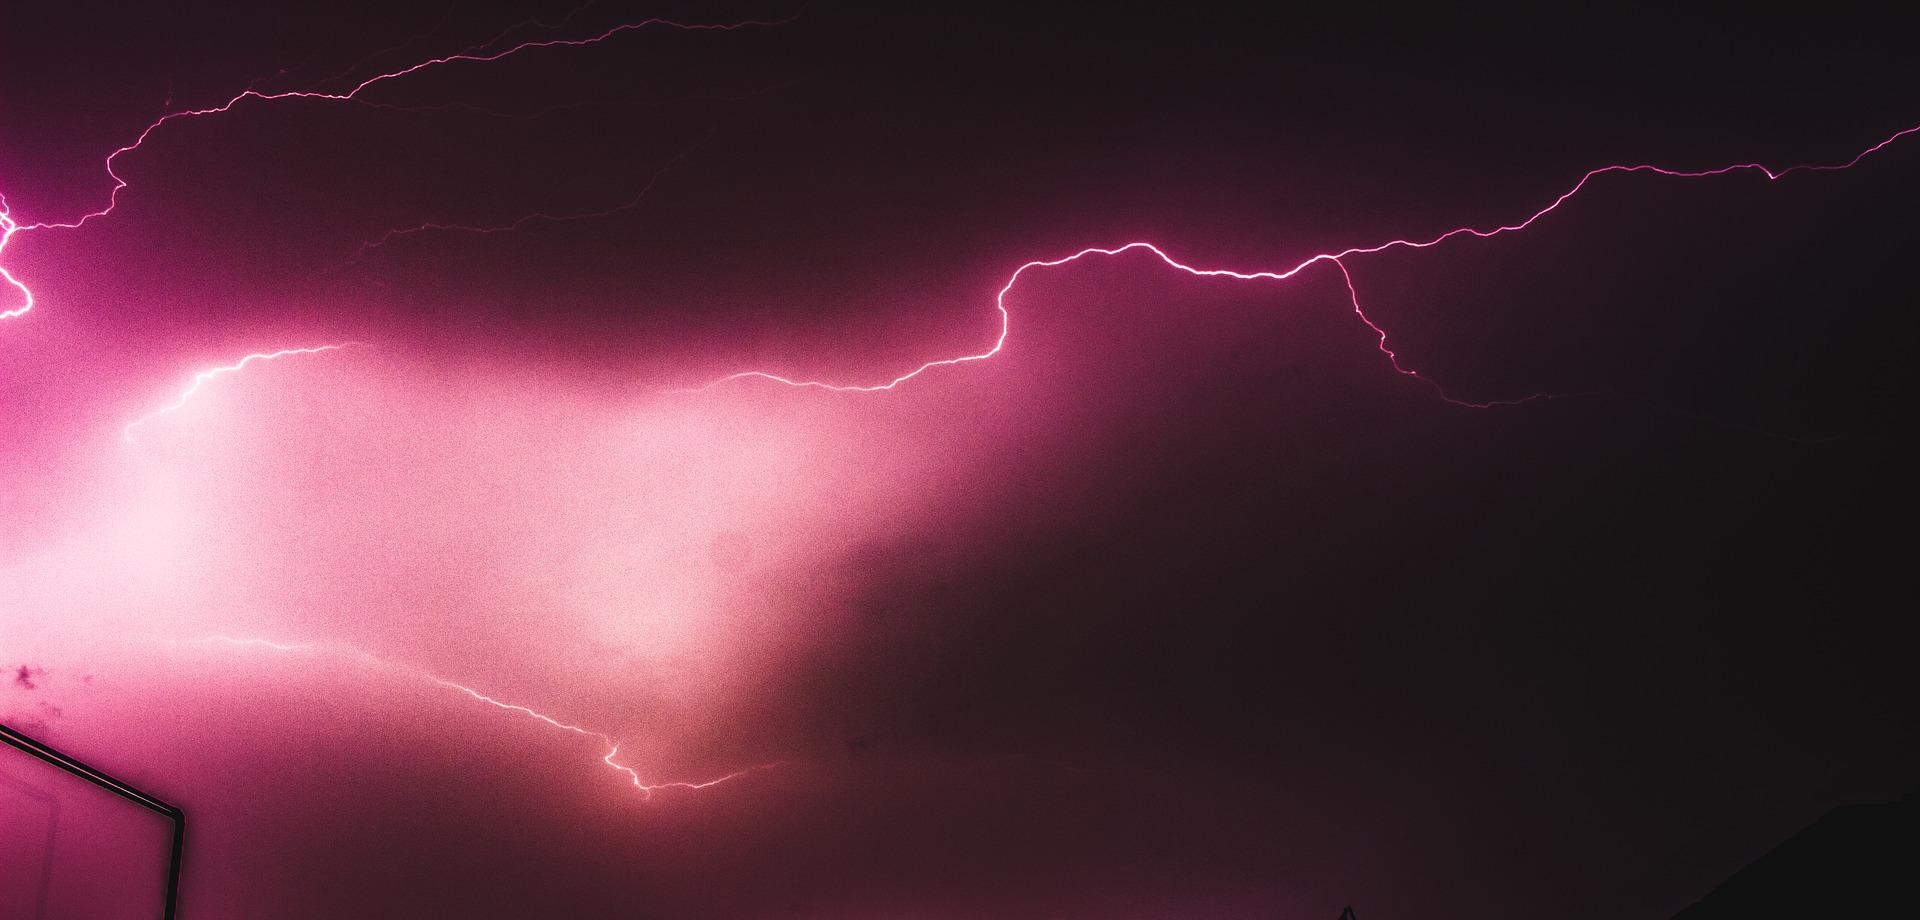 В Южной Алабаме молния эффектно прочертила линию на ночном небосводе © Ryan Gruver